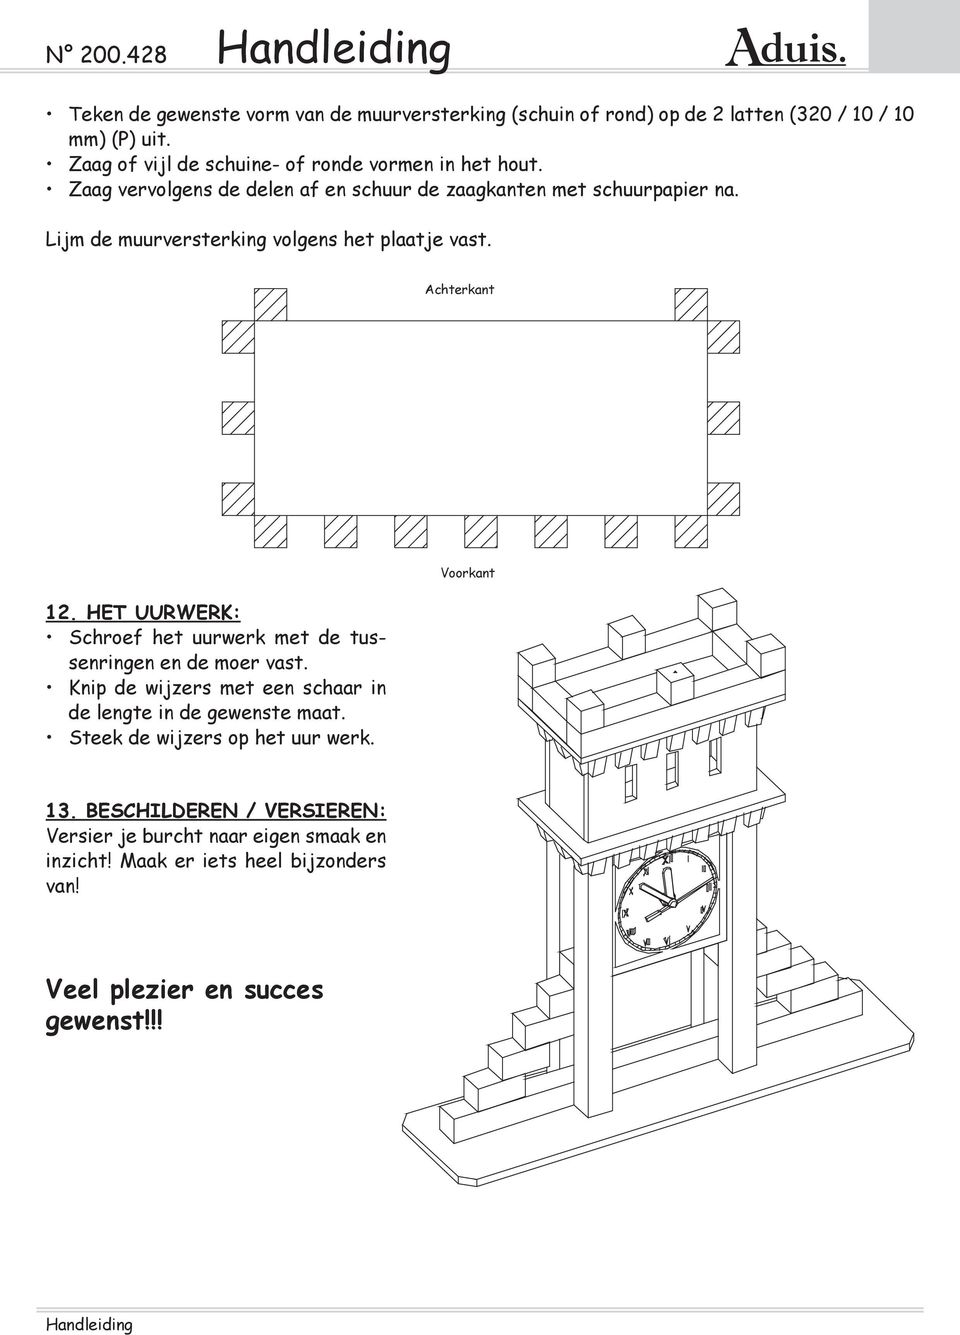 Lijm de muurversterking volgens het plaatje vast. Achterkant 12. het uurwerk: Schroef het uurwerk met de tussenringen en de moer vast.